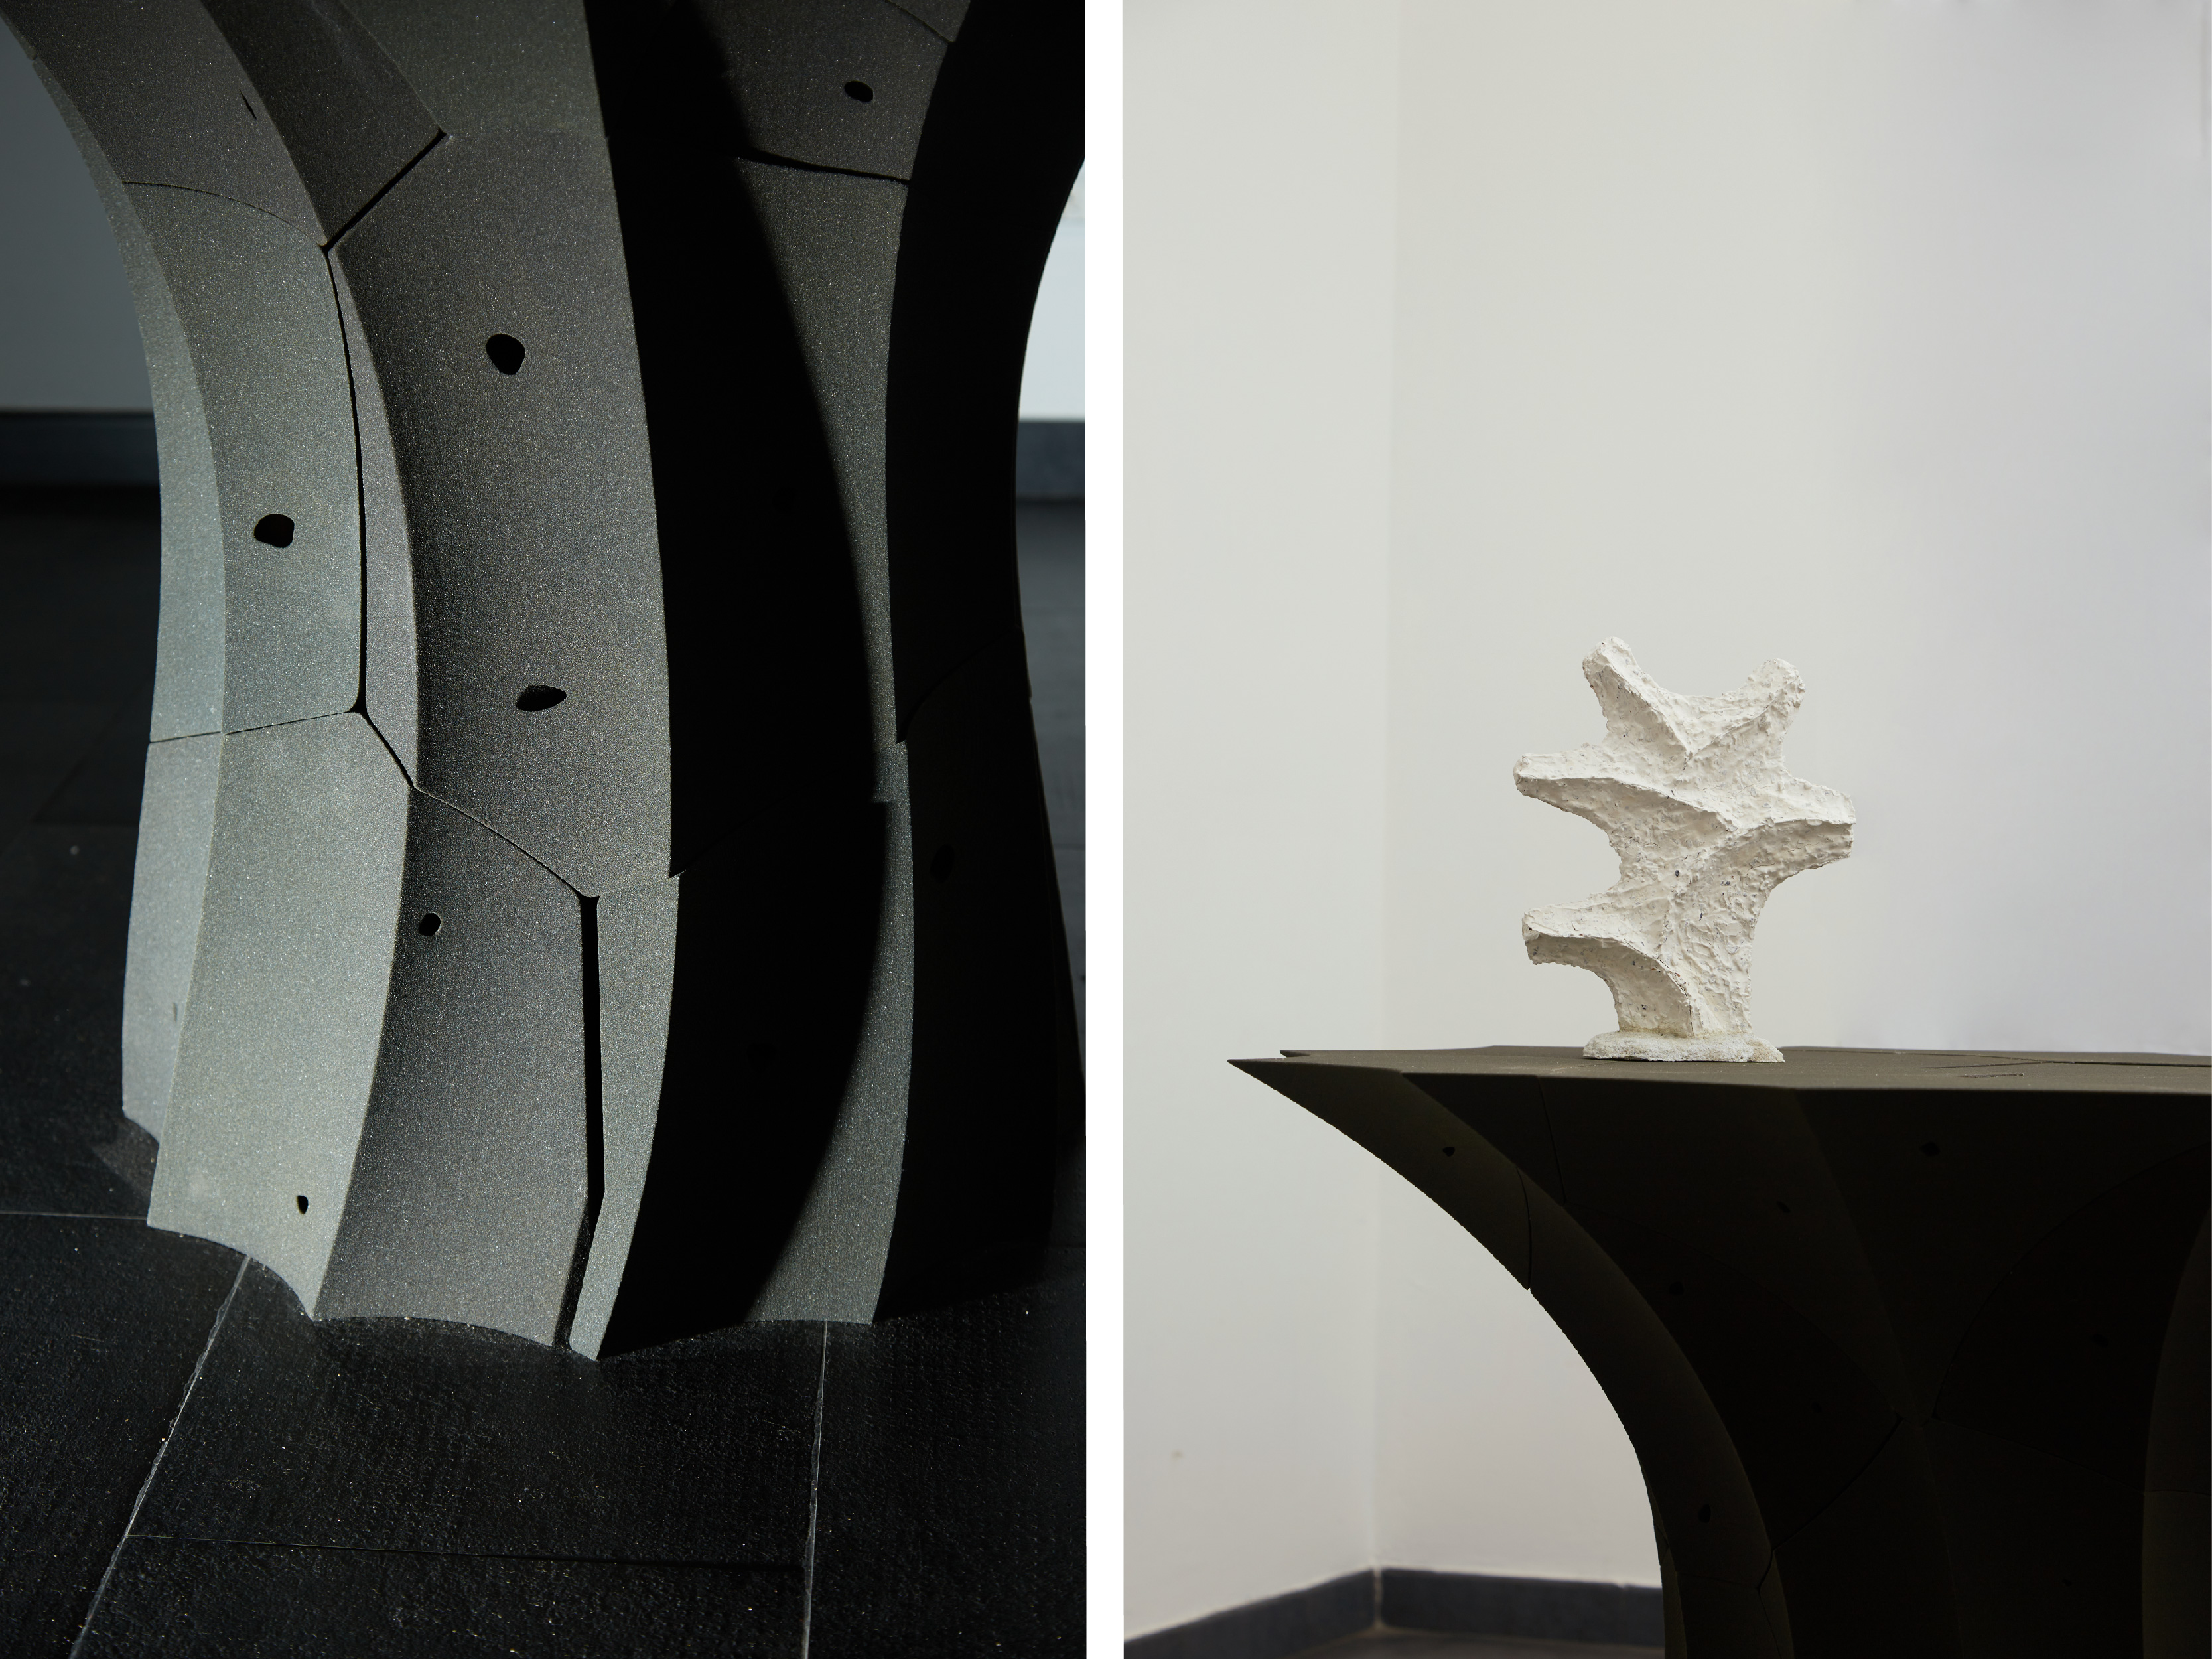 賴亭安，專注於材料實驗和未來工藝，作品《Fieldstone 積石》從傳統石牆堆砌中汲取靈感，聚焦數位製造與傳統石匠技藝融合的可能。